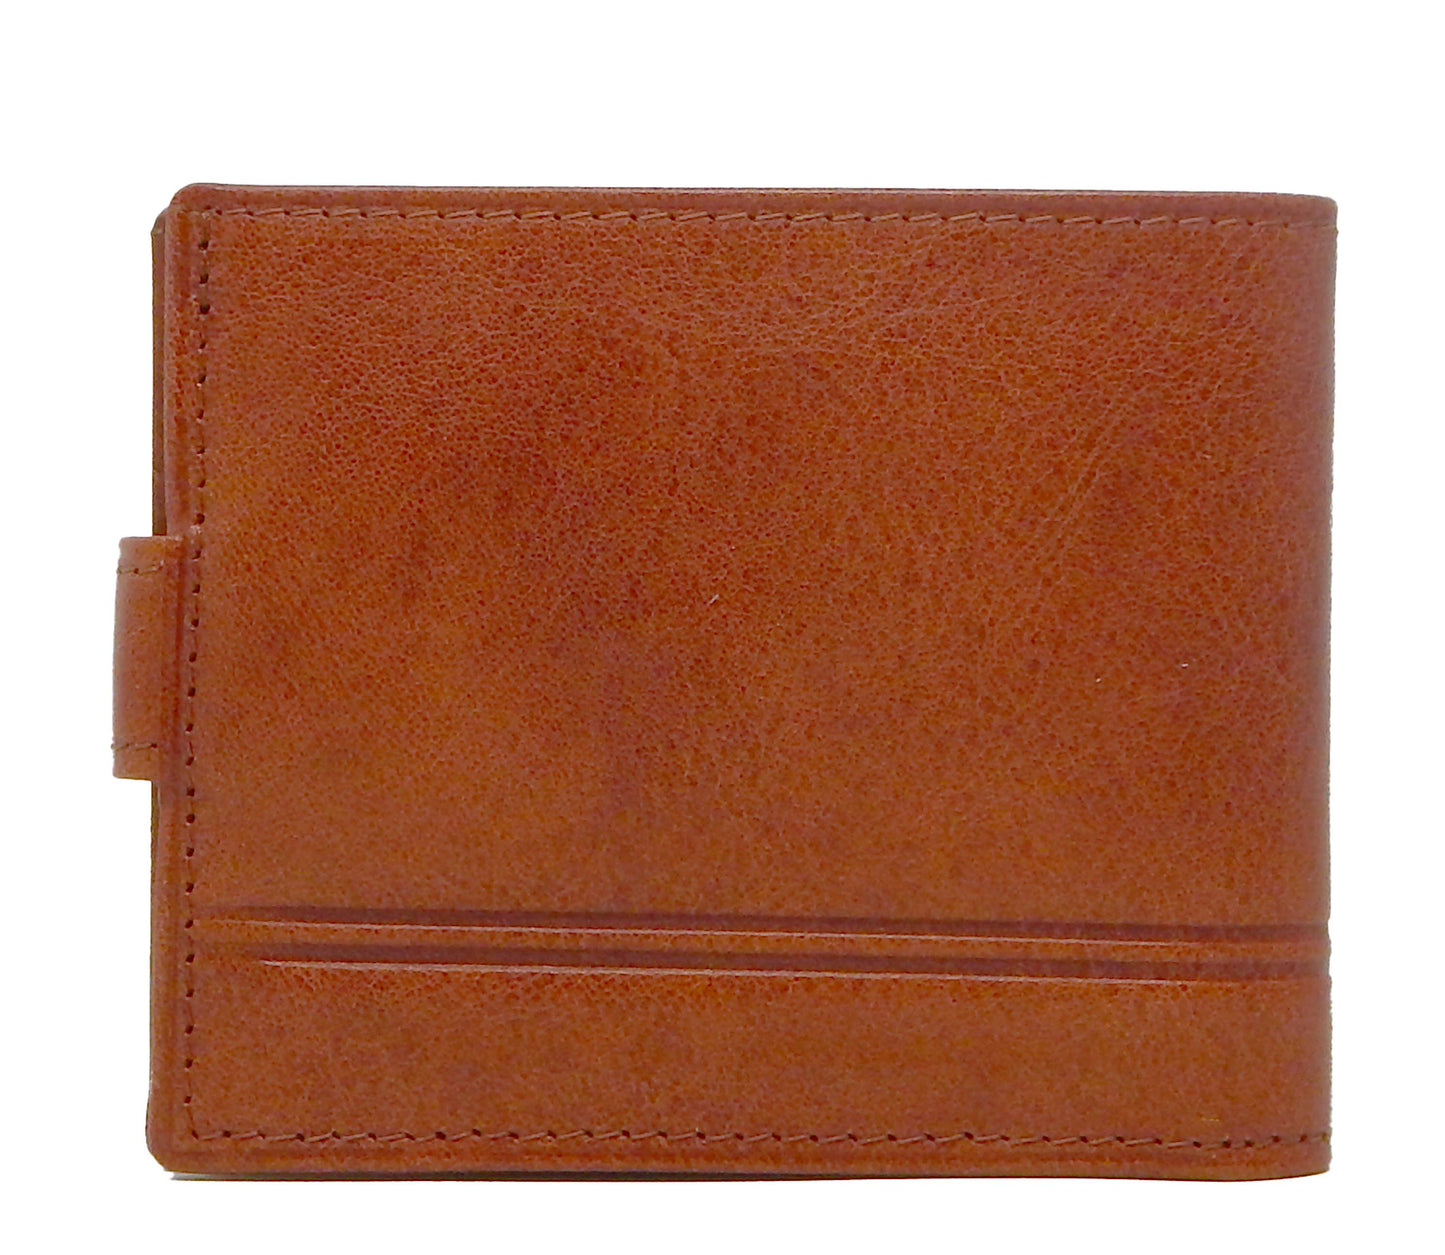 Cavalinho Men's Bifold Leather Wallet - SaddleBrown - 28160516.13.99_3